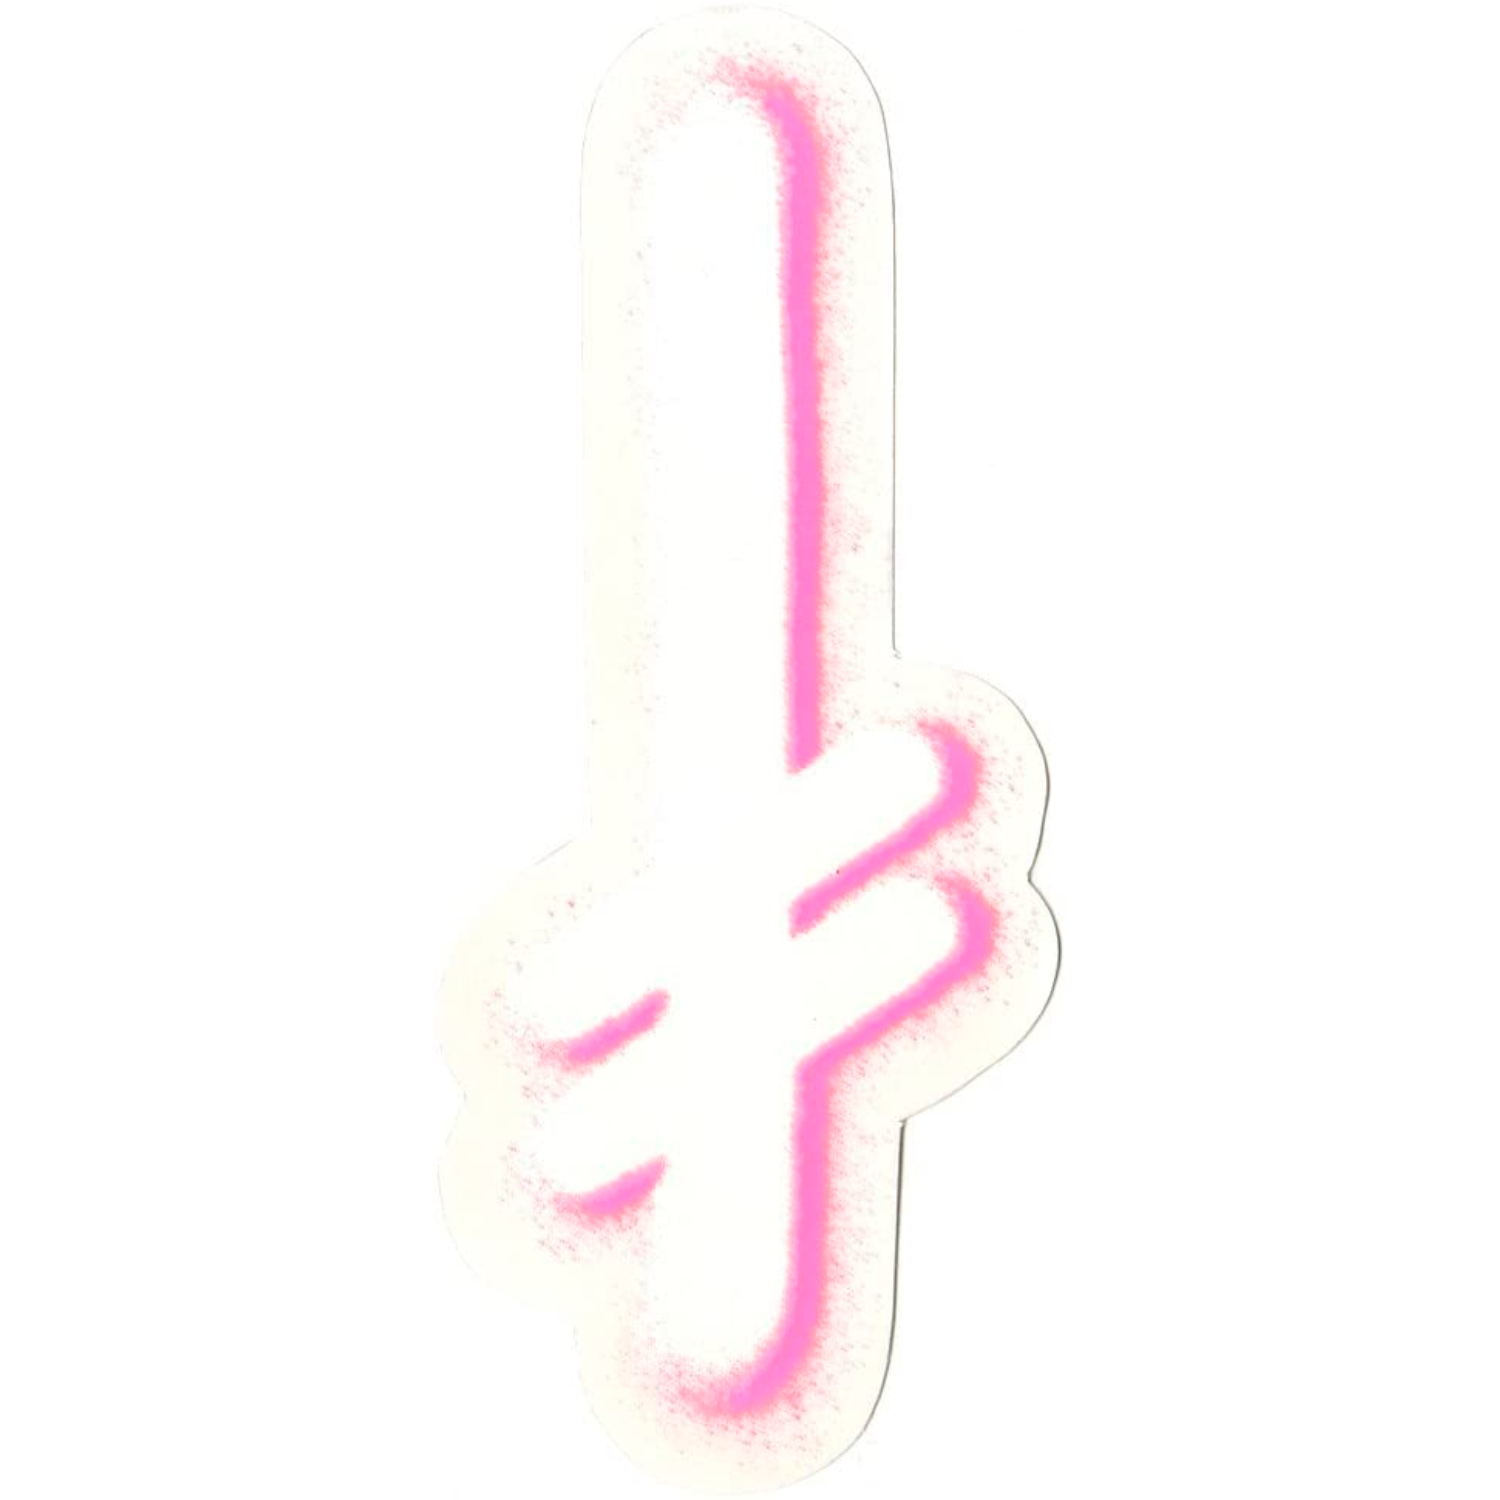 Sticker Deathwish - Gang spray white pink